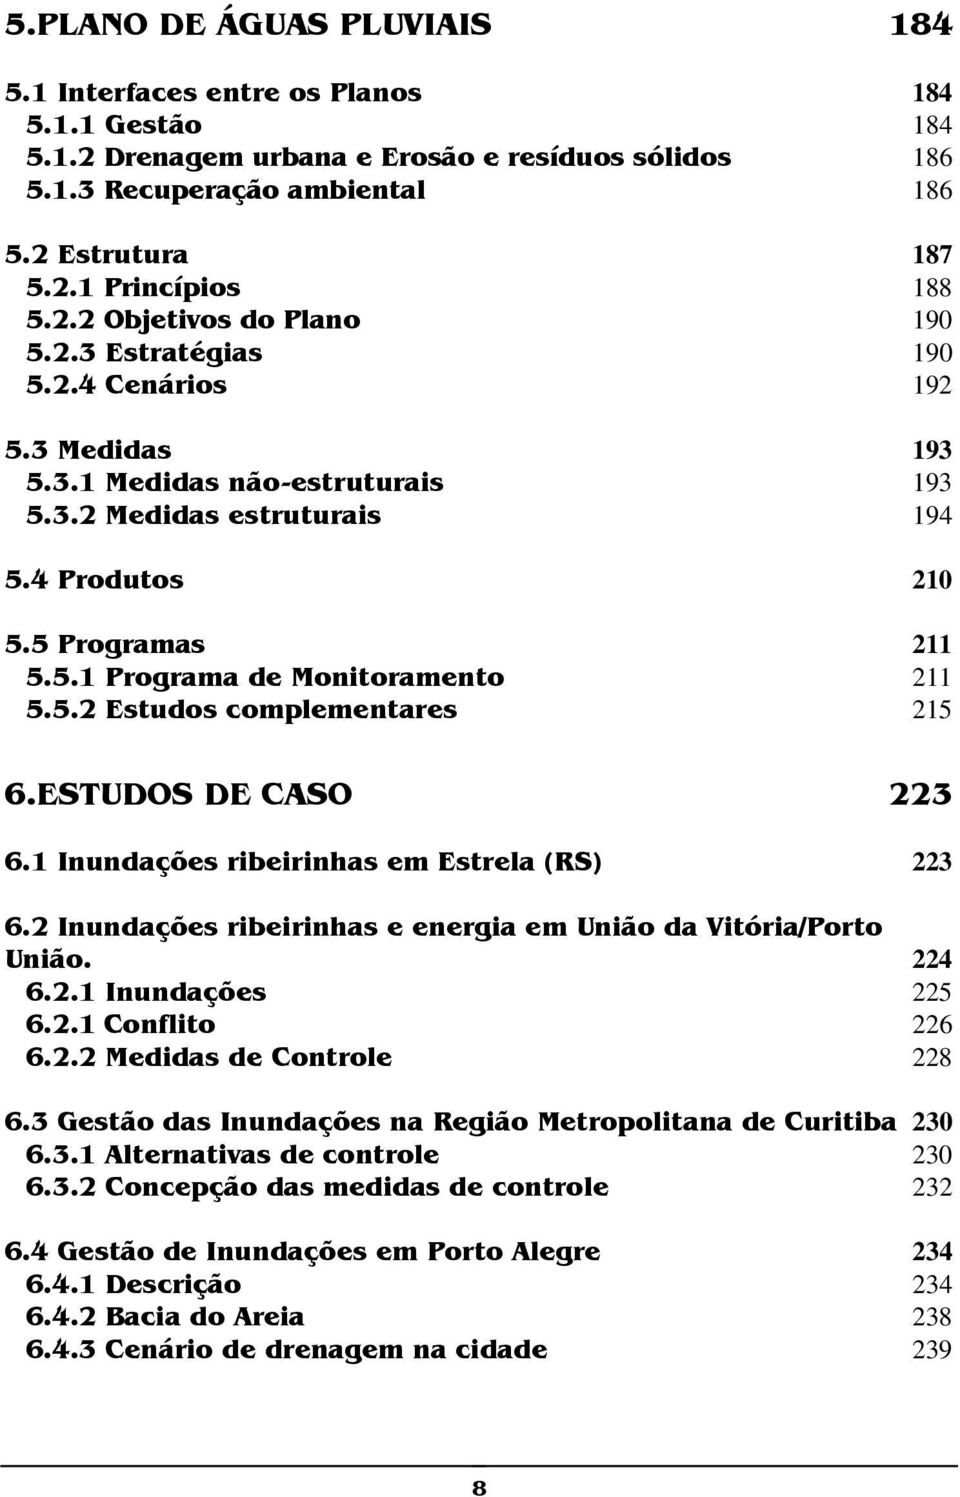 5.2 Estudos complementares 215 6.ESTUDOS DE CASO 223 6.1 Inundações ribeirinhas em Estrela (RS) 223 6.2 Inundações ribeirinhas e energia em União da Vitória/Porto União. 224 6.2.1 Inundações 225 6.2.1 Conflito 226 6.